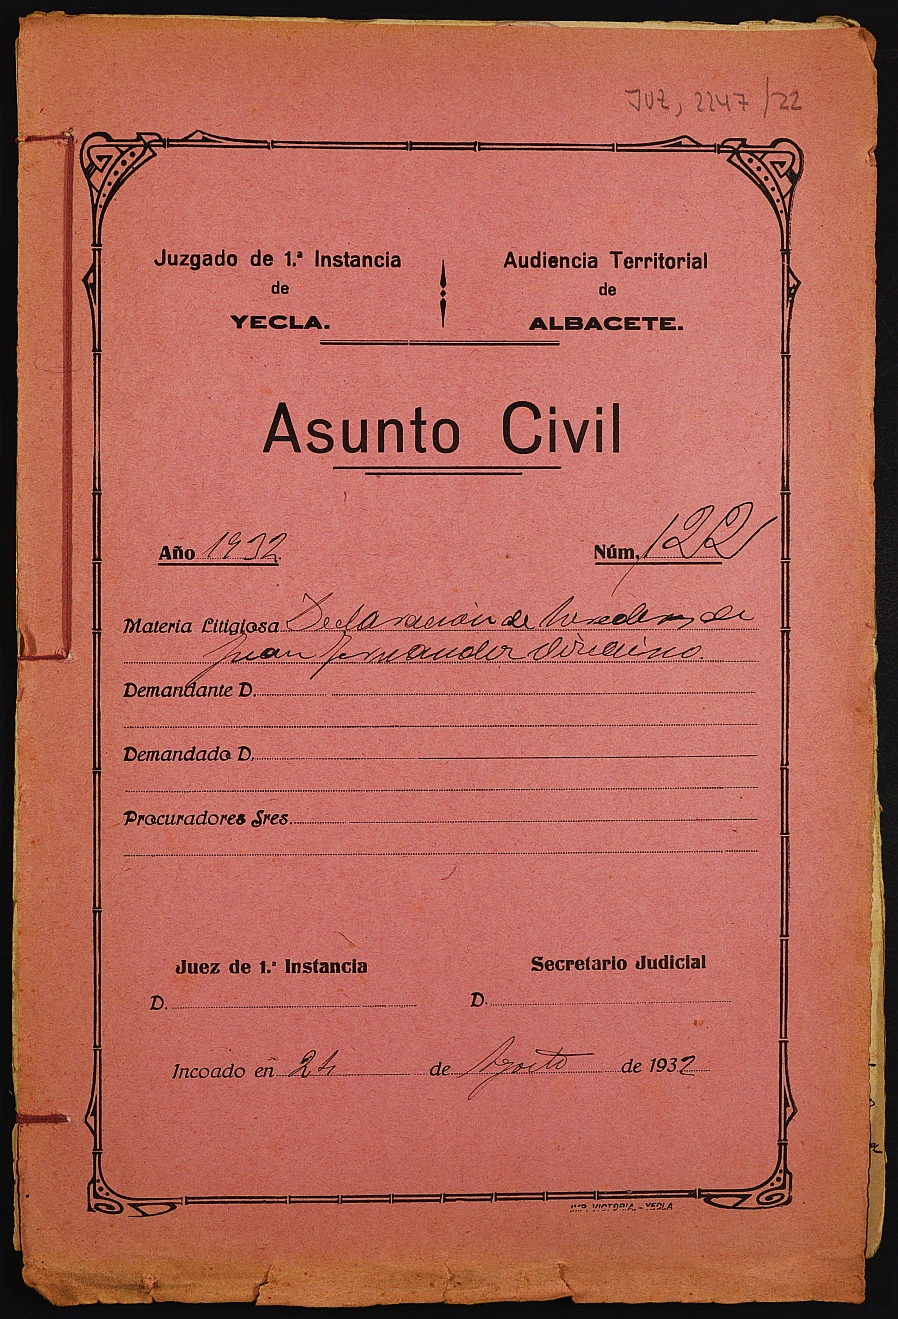 Declaración de herederos 122/1932 del Juzgado de Primera Instancia e Instrucción Nº 1 de Yecla, por defunción de Juan Fernández Vizcaíno.